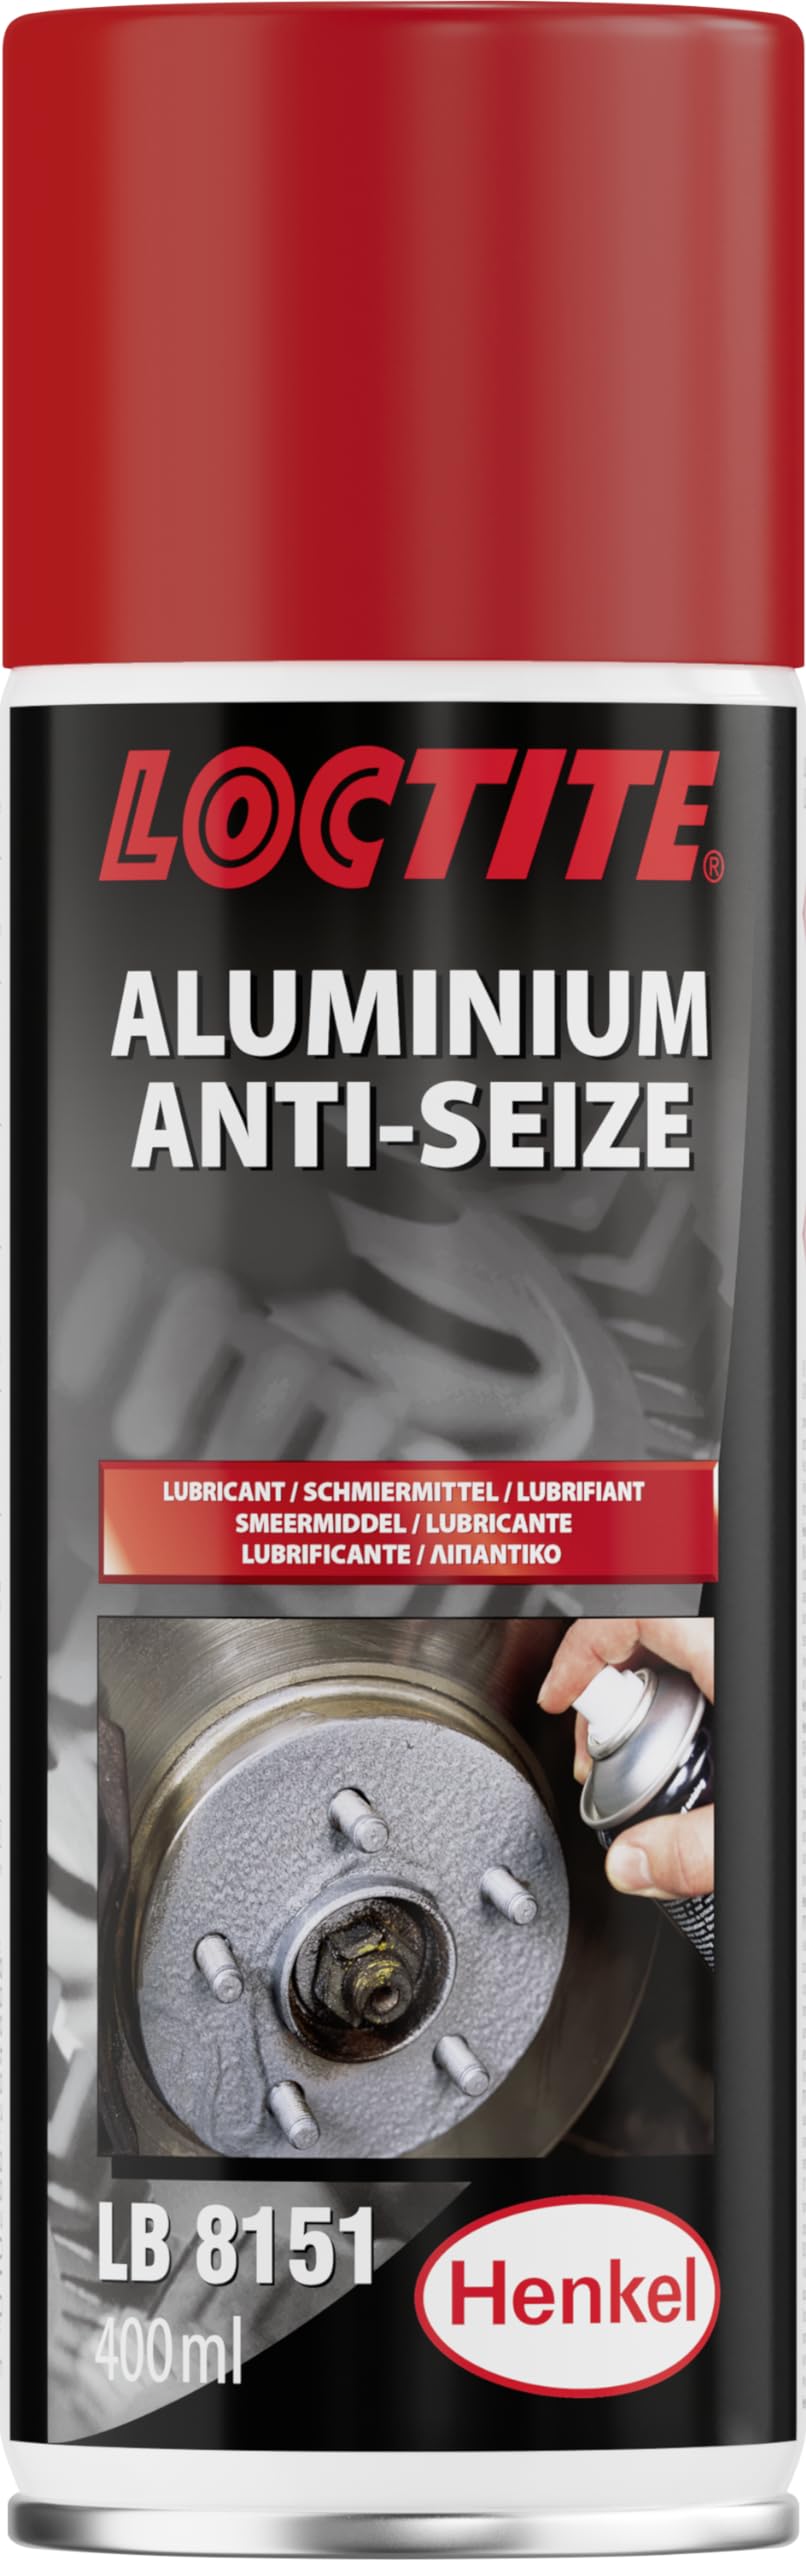 Loctite 303136 Anti-Seize Aluminium LB 8151" 400 ml von Loctite